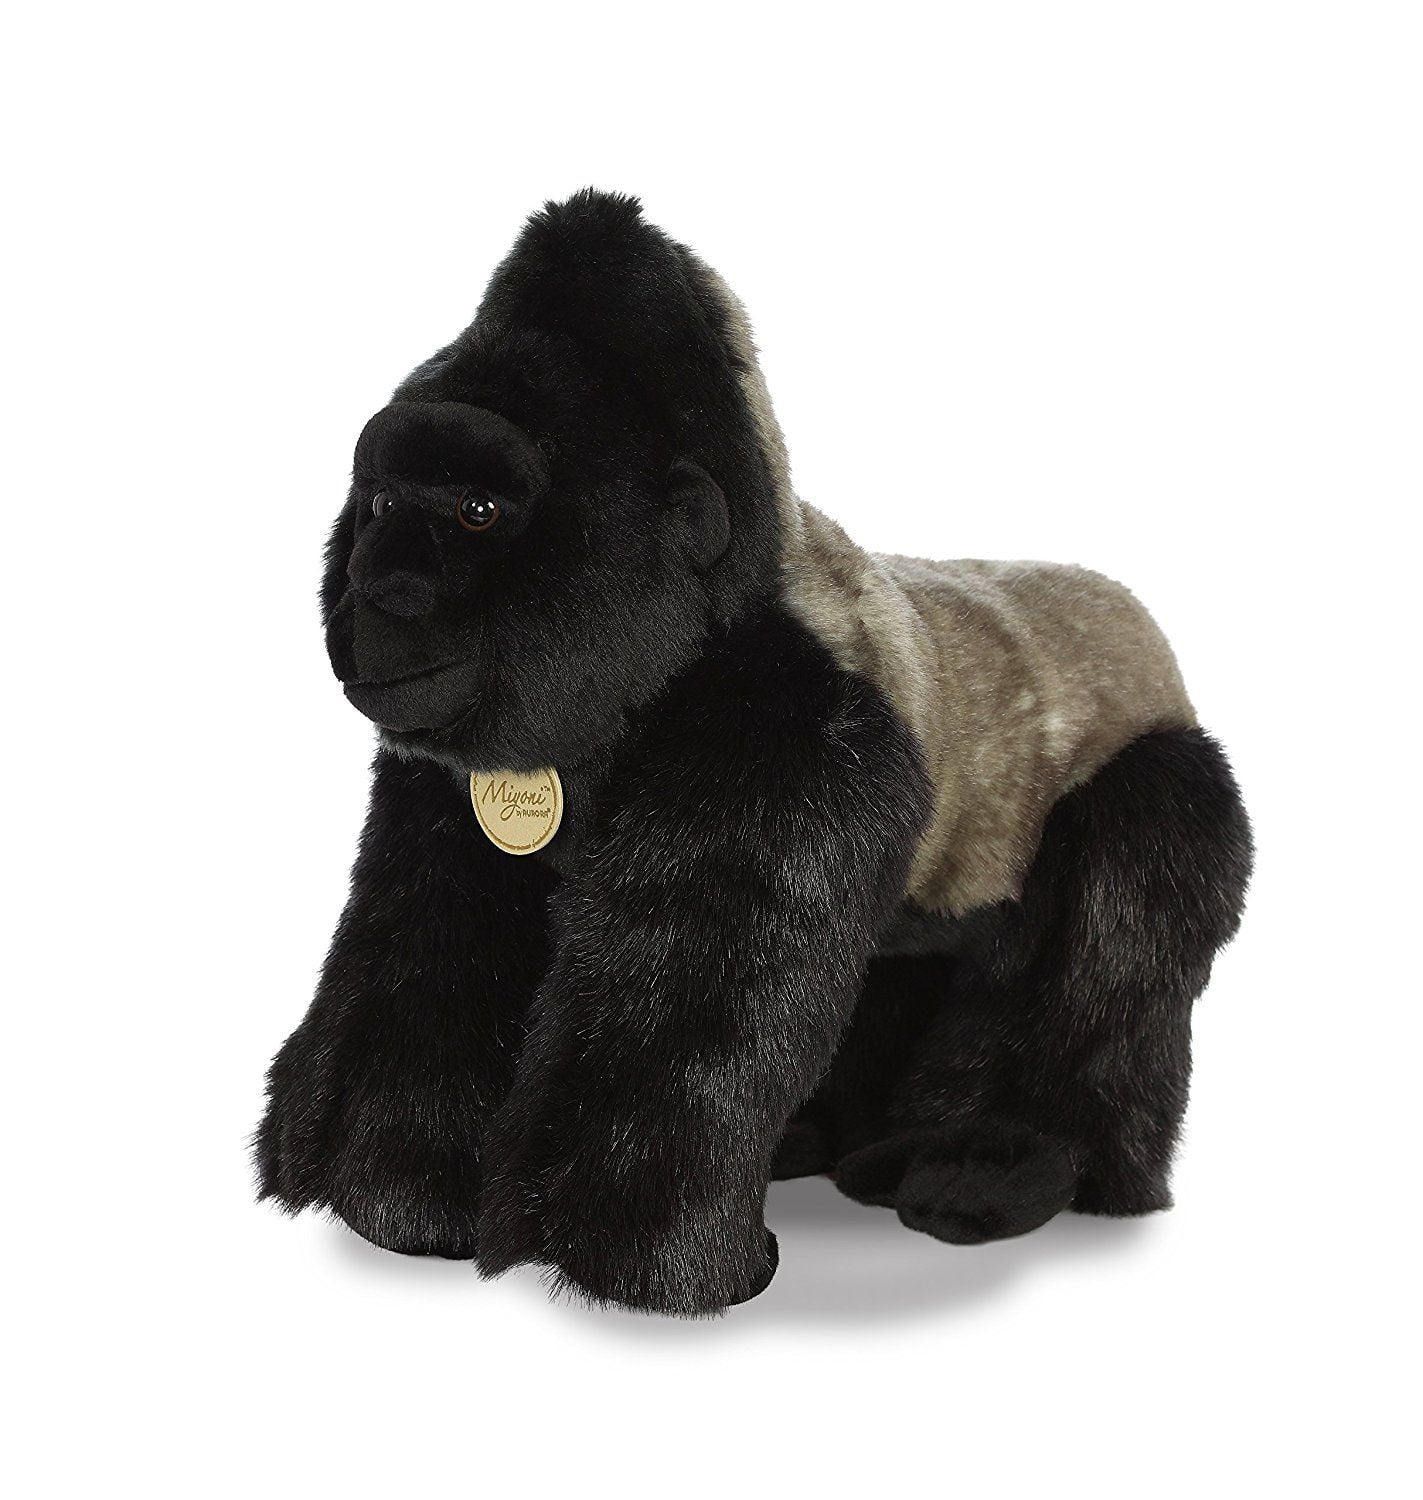 Giant Large Monkey Plush Toy Stuffed Wild Gorilla Friend Animal Pillow Gift 32/'/'